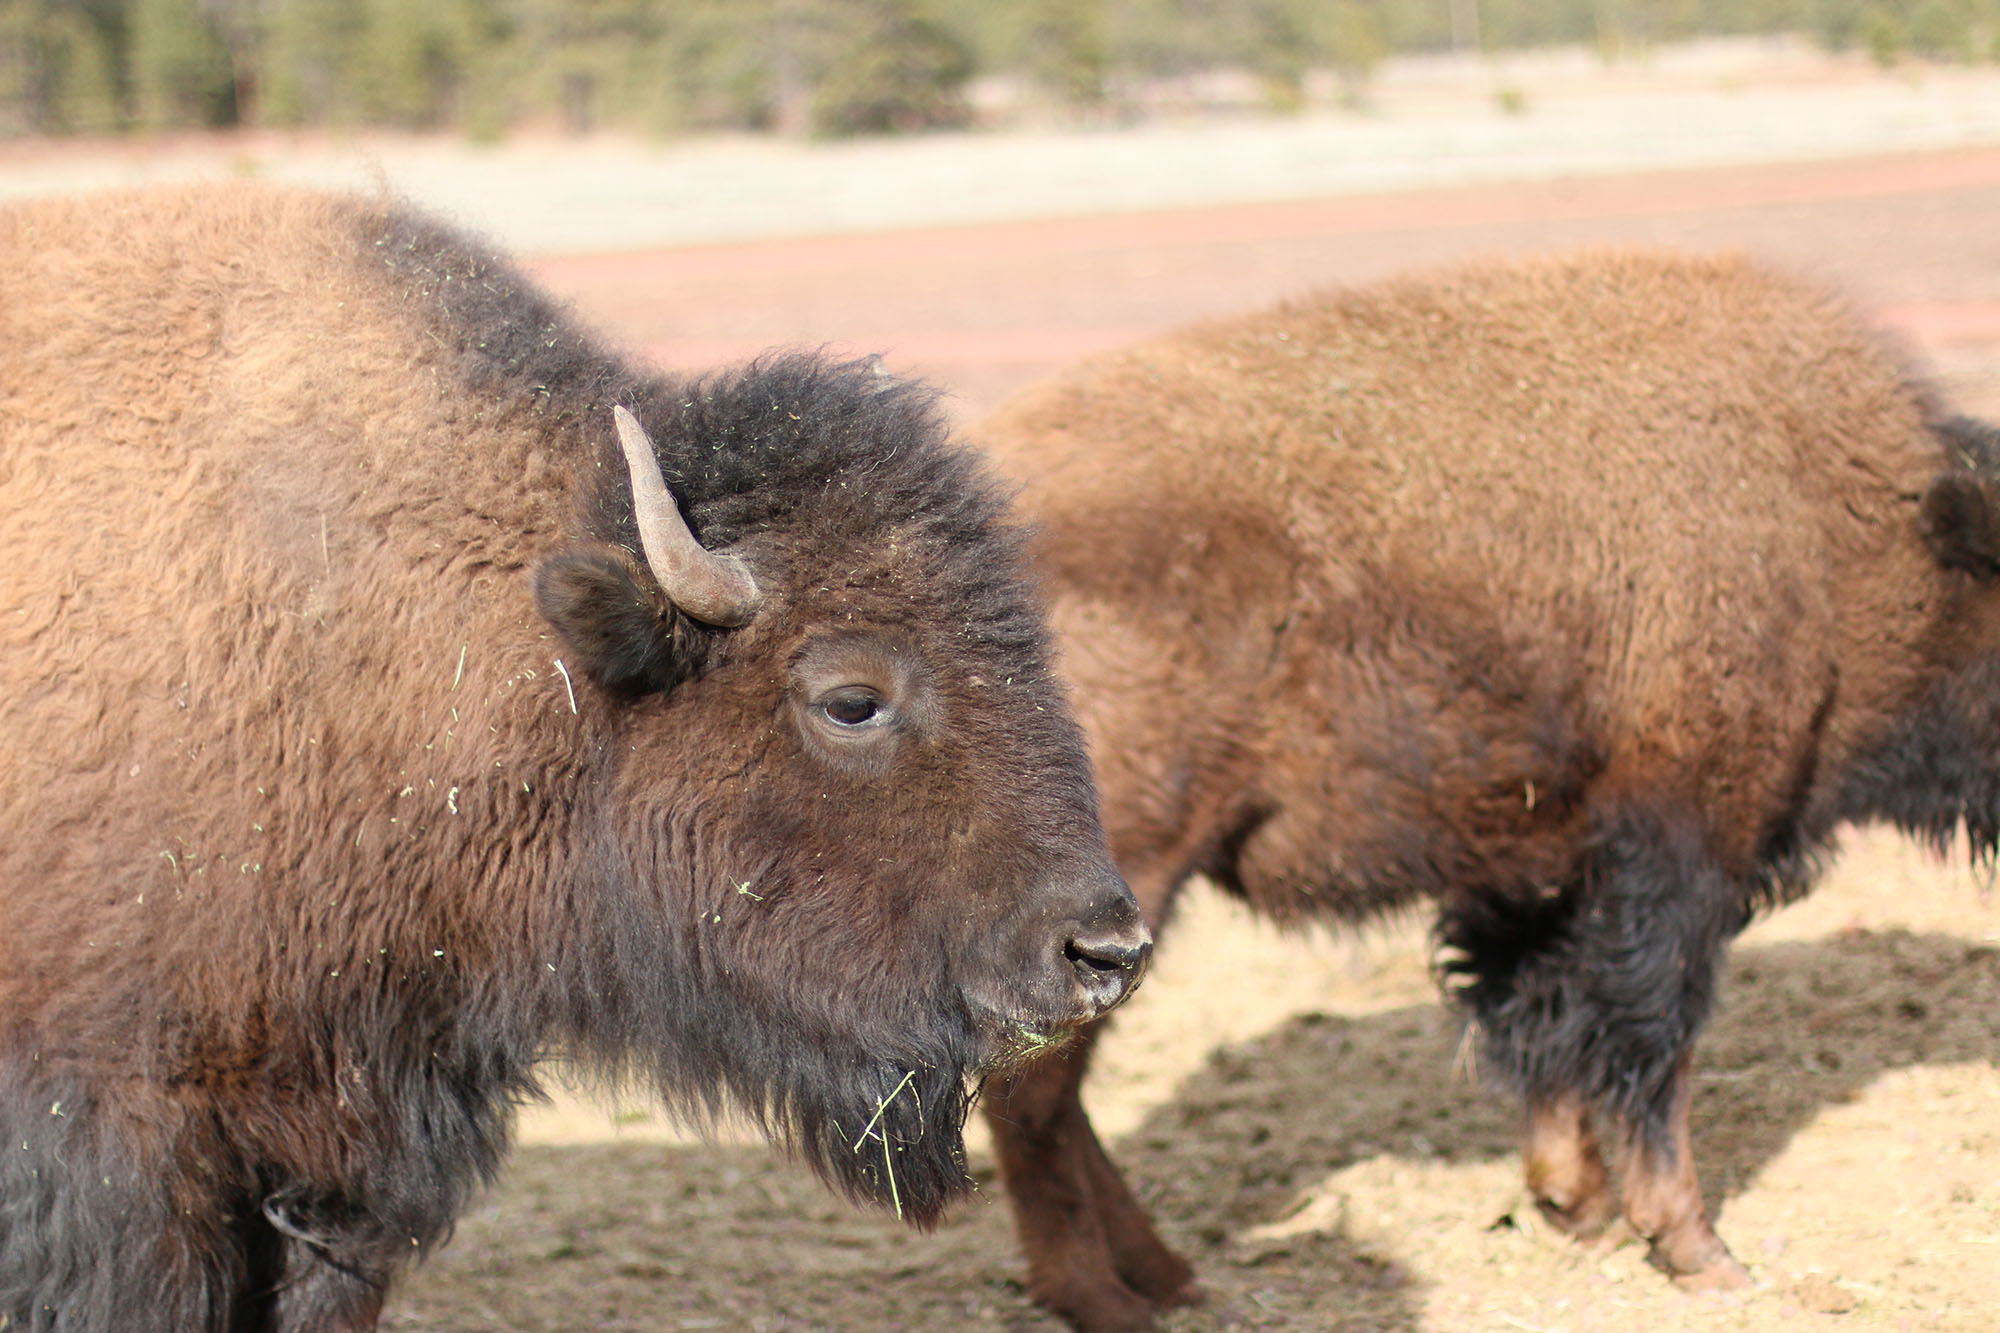 IMG_1861 bearizona bison x